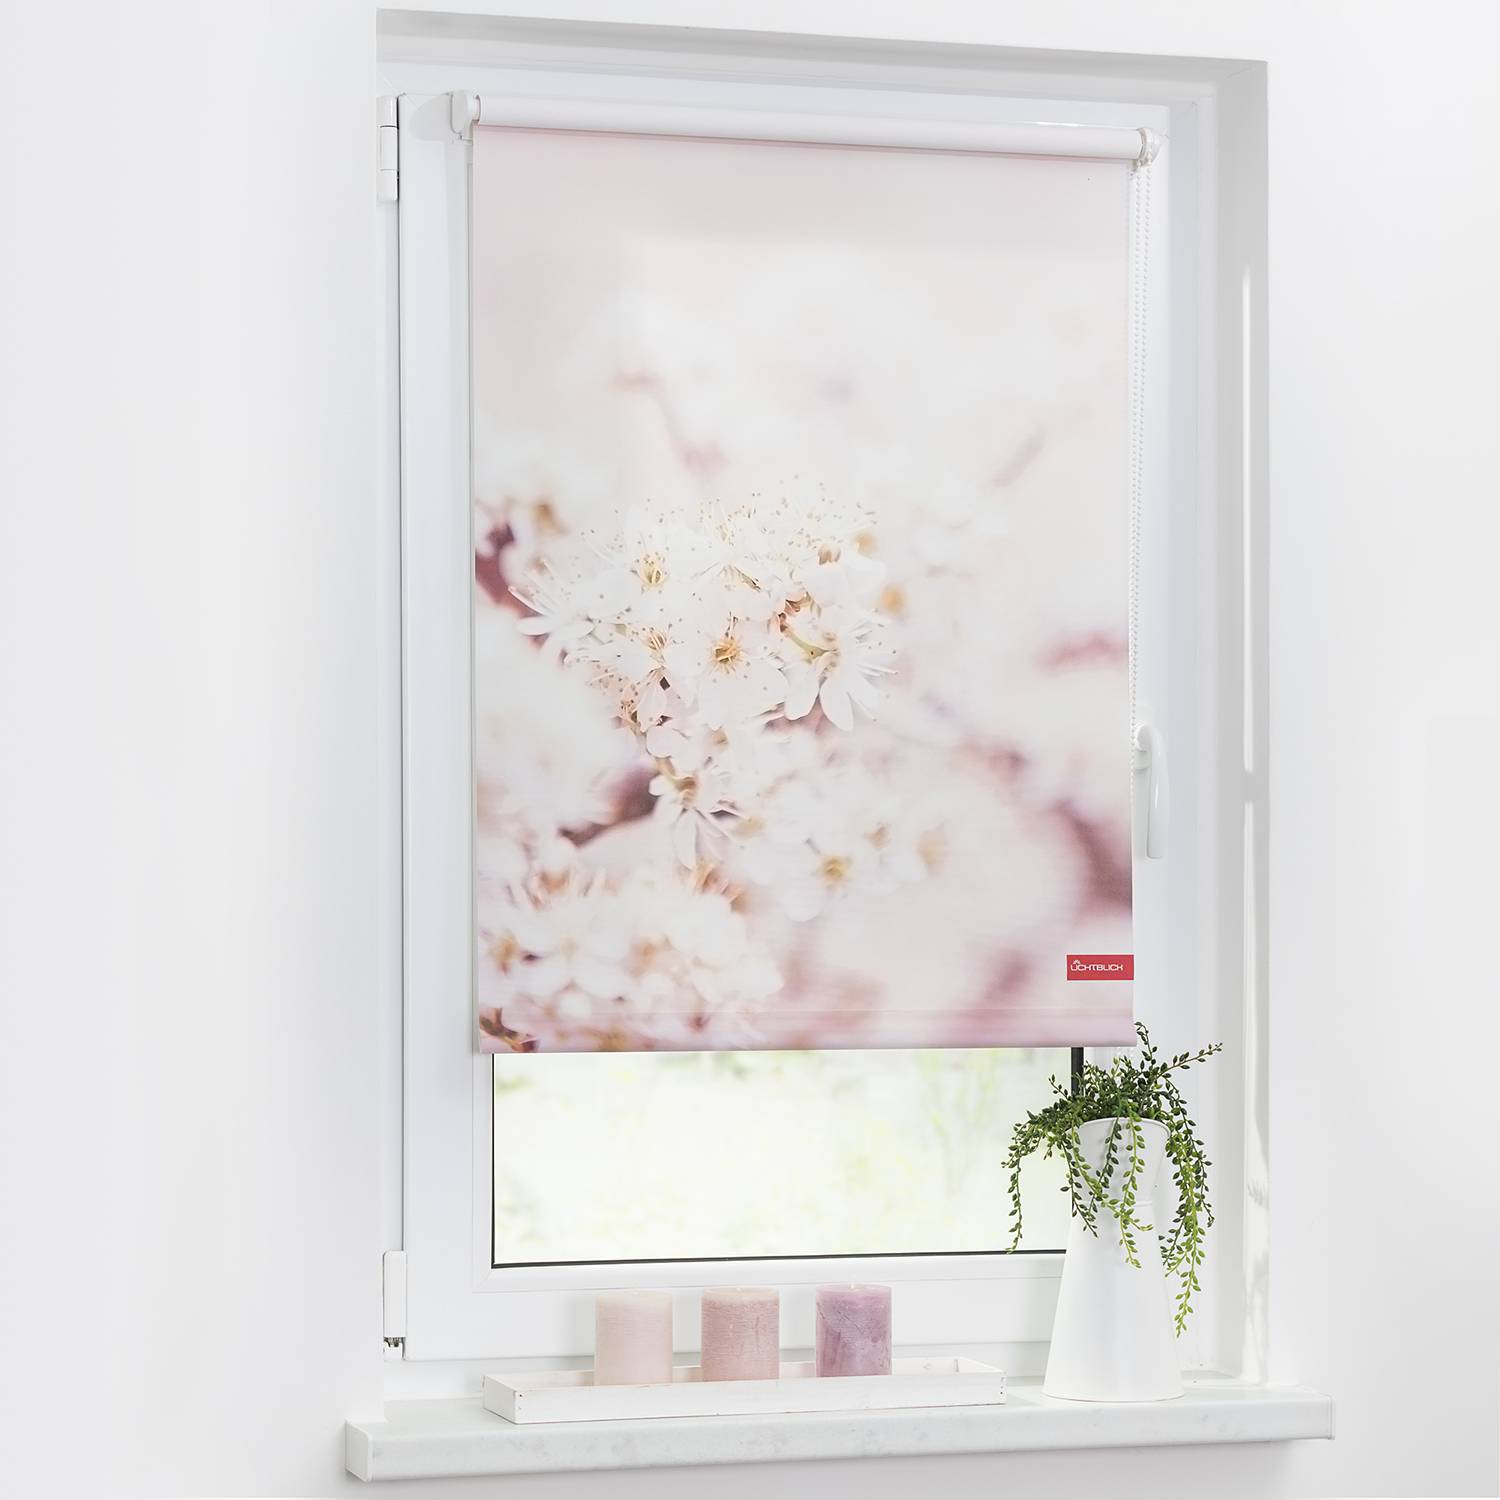 Image of Store enrouleur cerisier en fleurs 000000001000141804